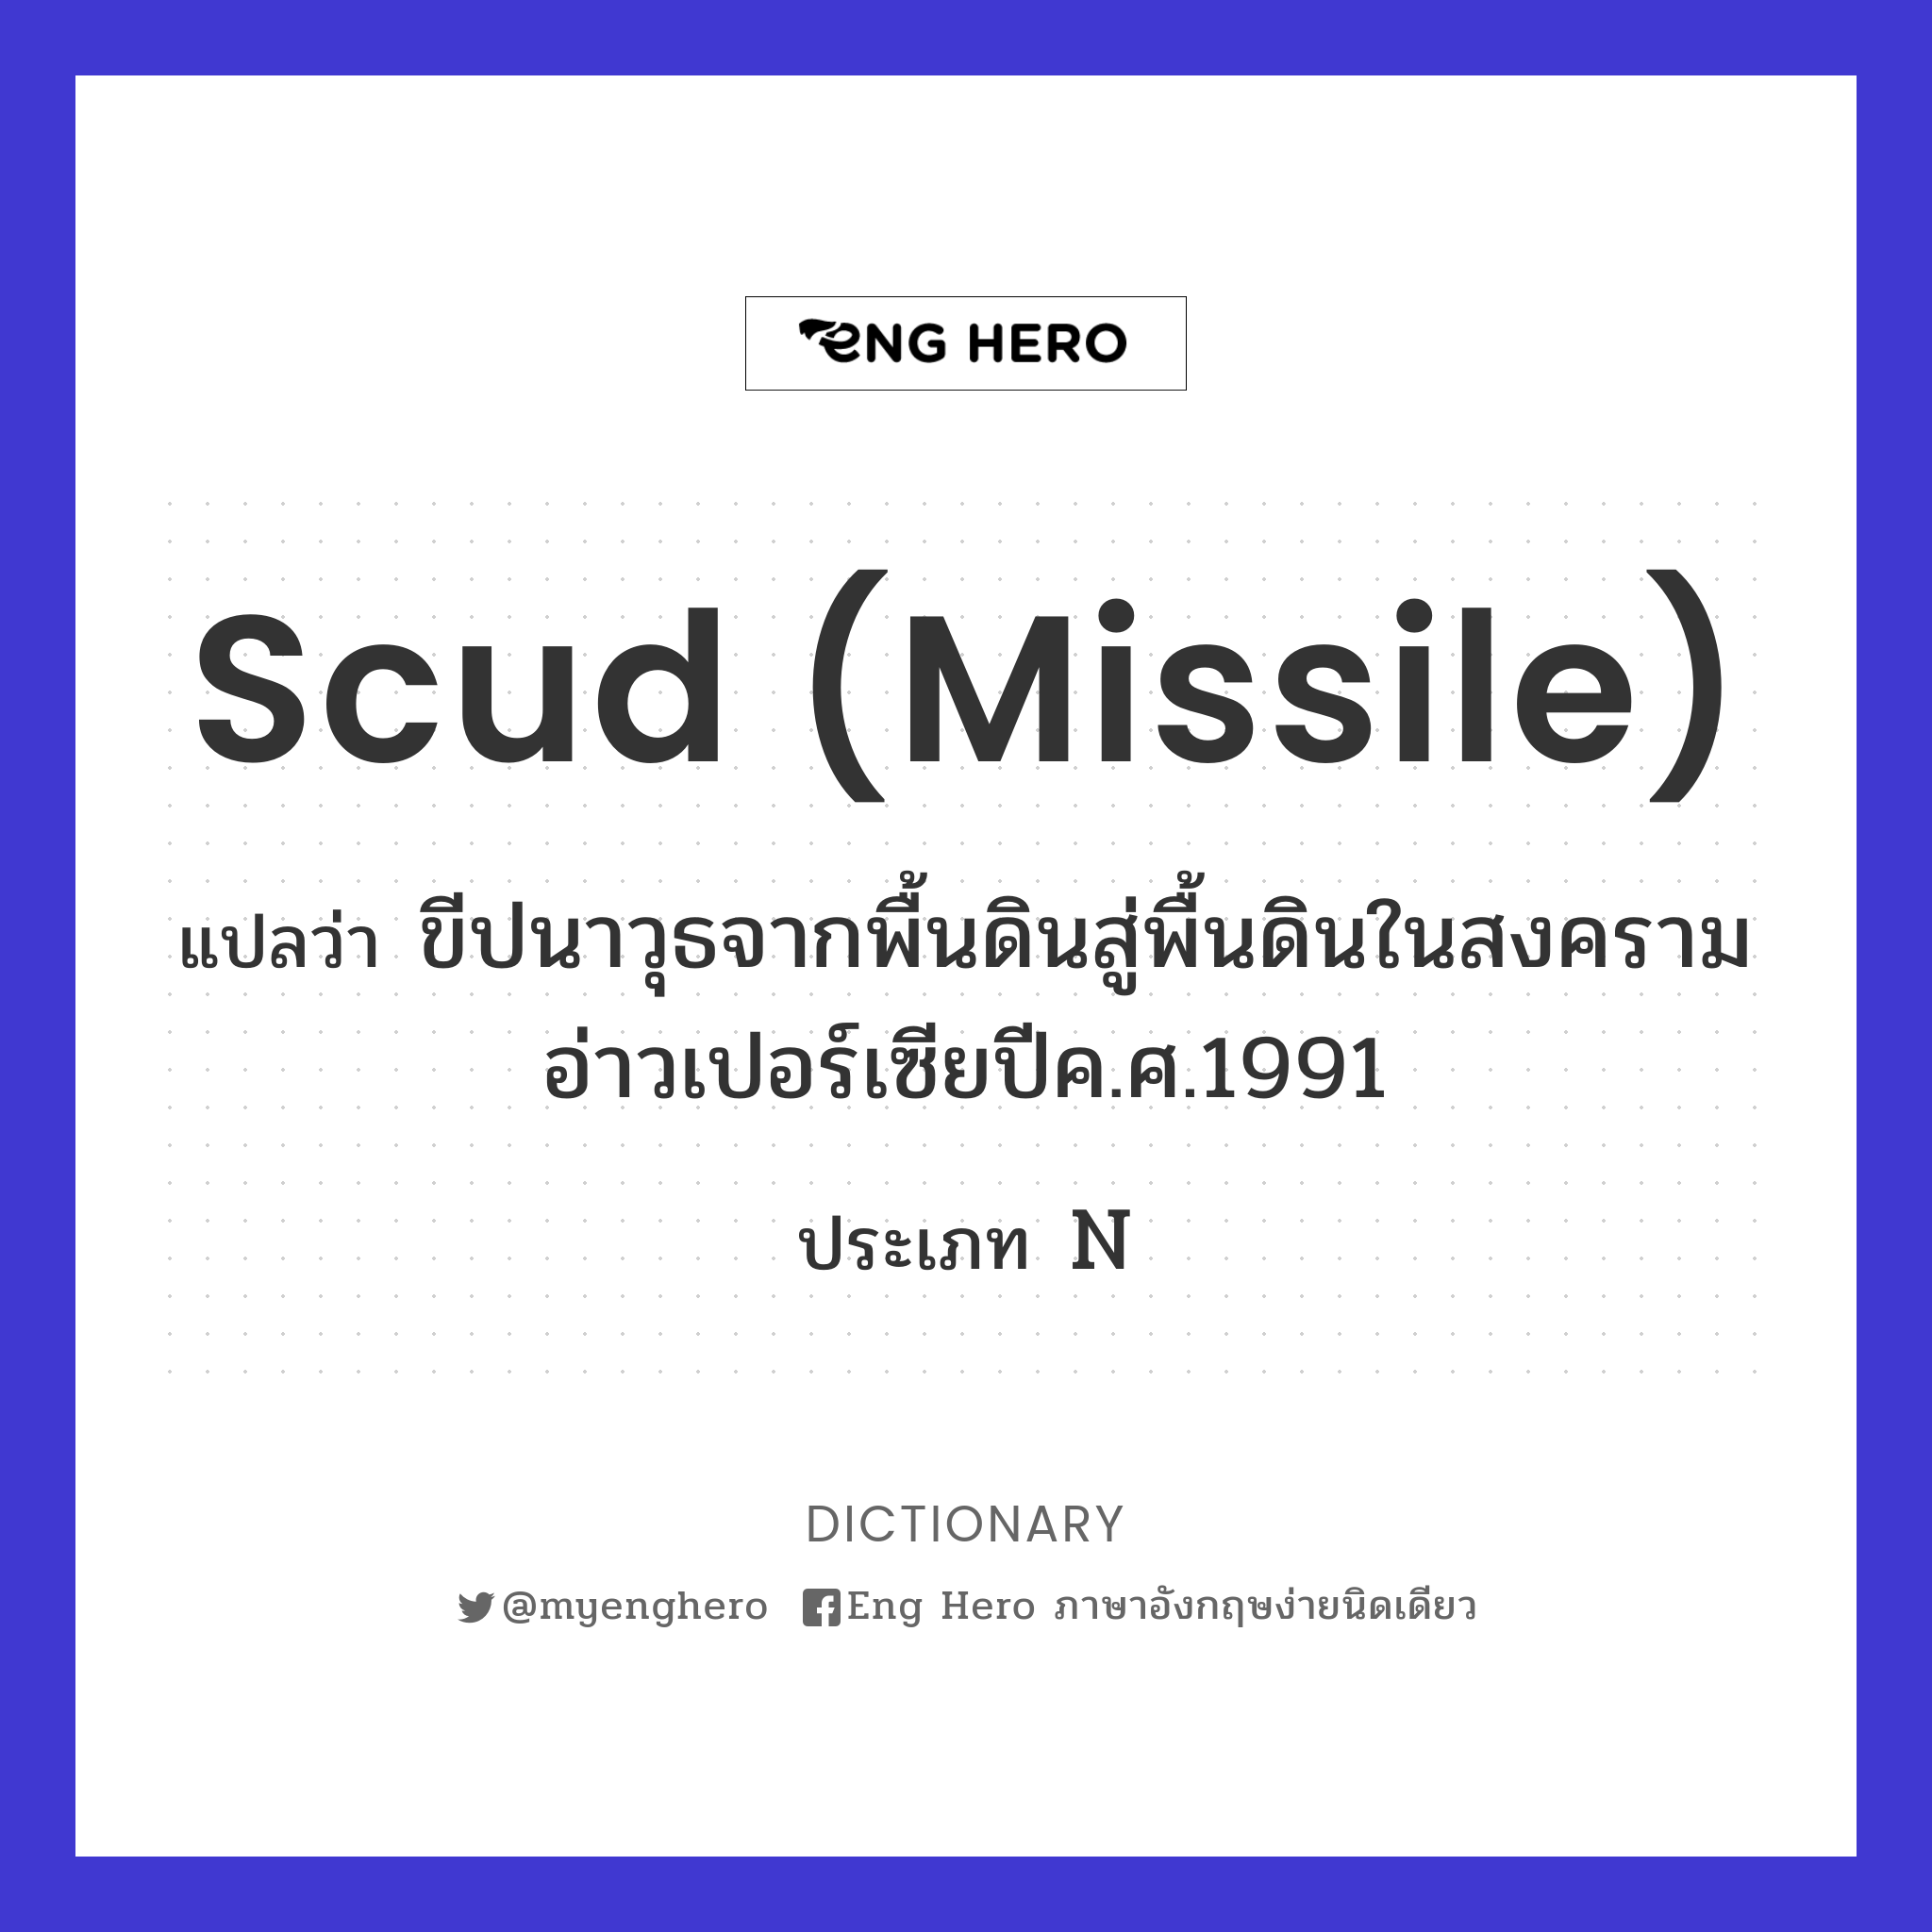 Scud (missile)